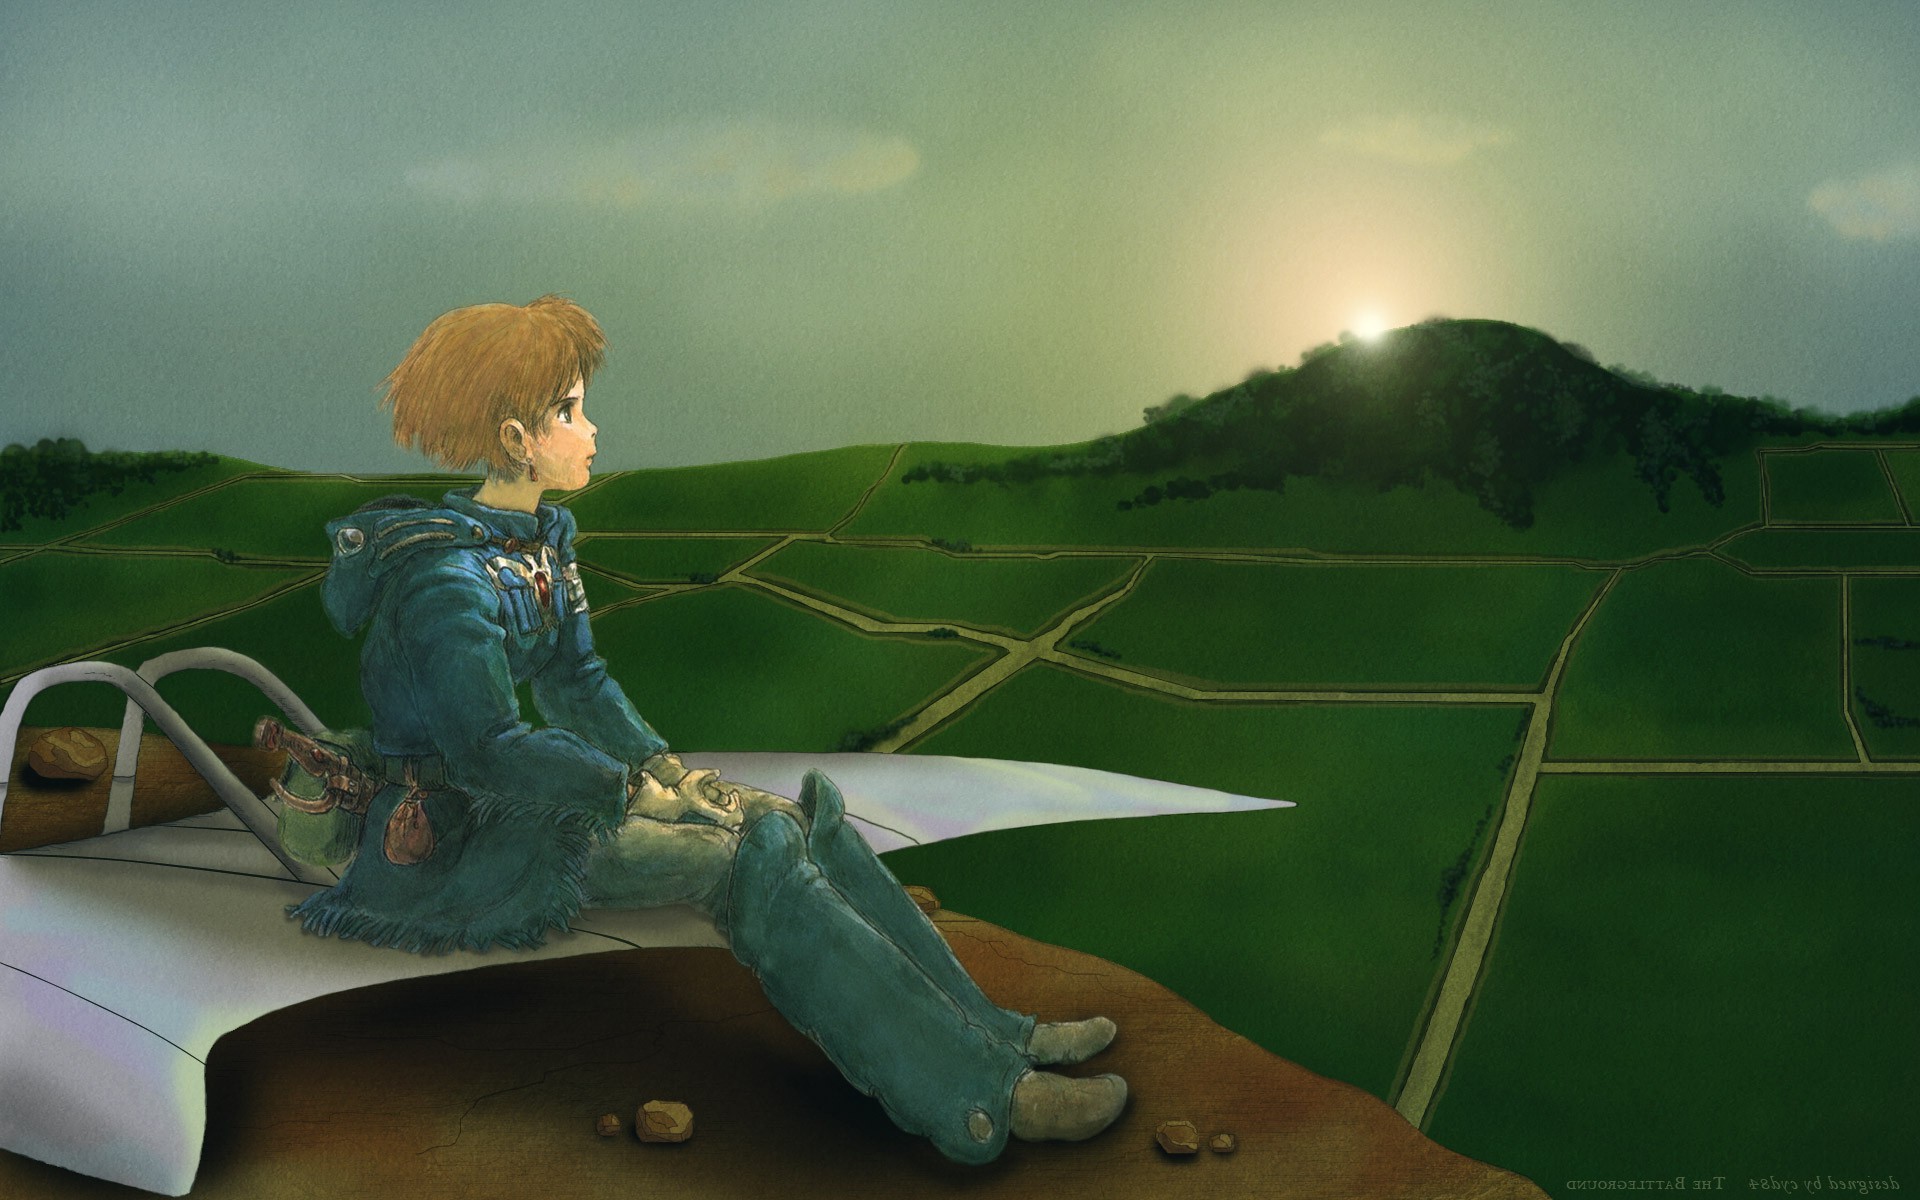 Nausicaä of the Valley of Wind by Hayao Miyazaki